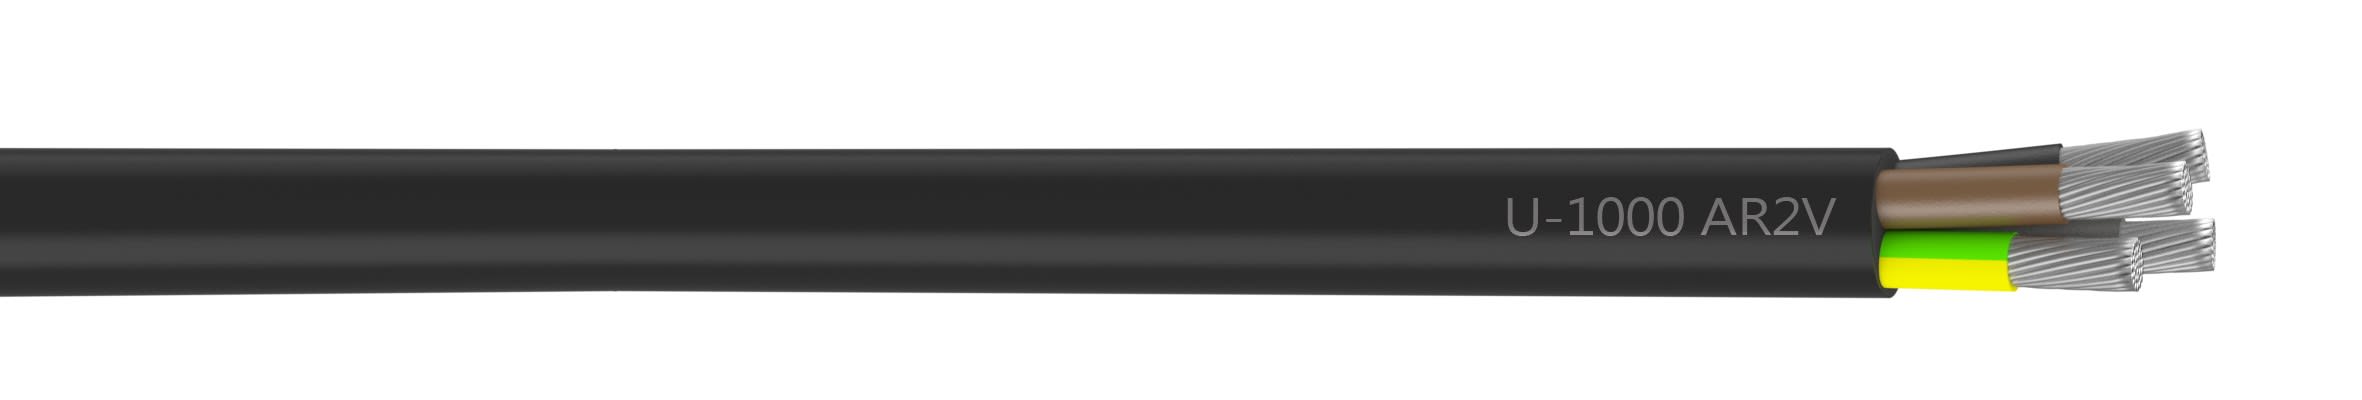 Nexans - Câble rigide U-1000 AR2V aluminium 4G35 longueur à la coupe